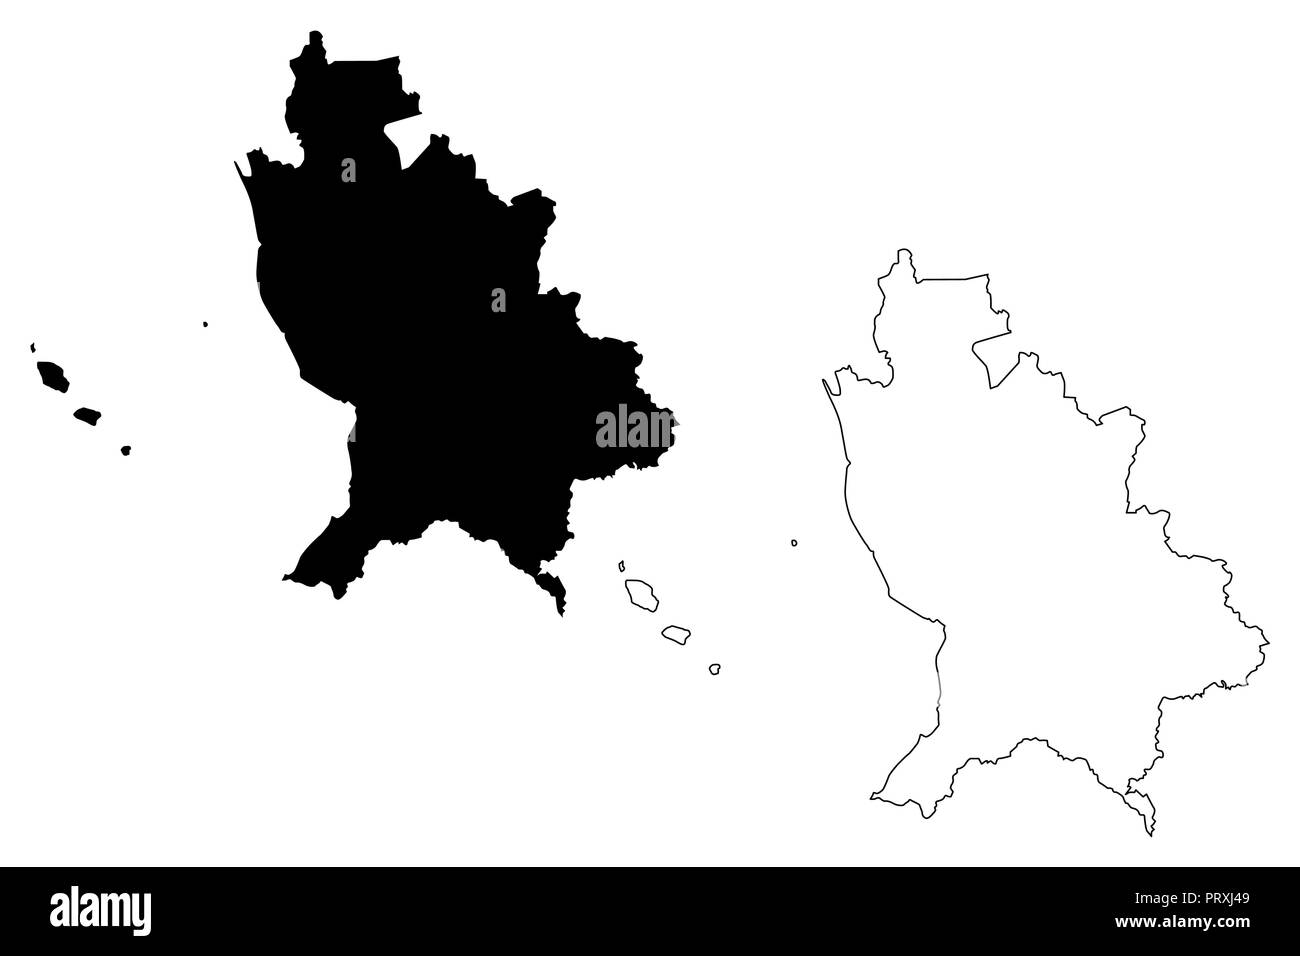 Nayarit (Vereinigte mexikanische Staaten, Mexiko, Bundesrepublik) Karte Vektor-illustration, kritzeln Skizze freier und souveräner Staat von Nayarit (Insel Marías Stock Vektor